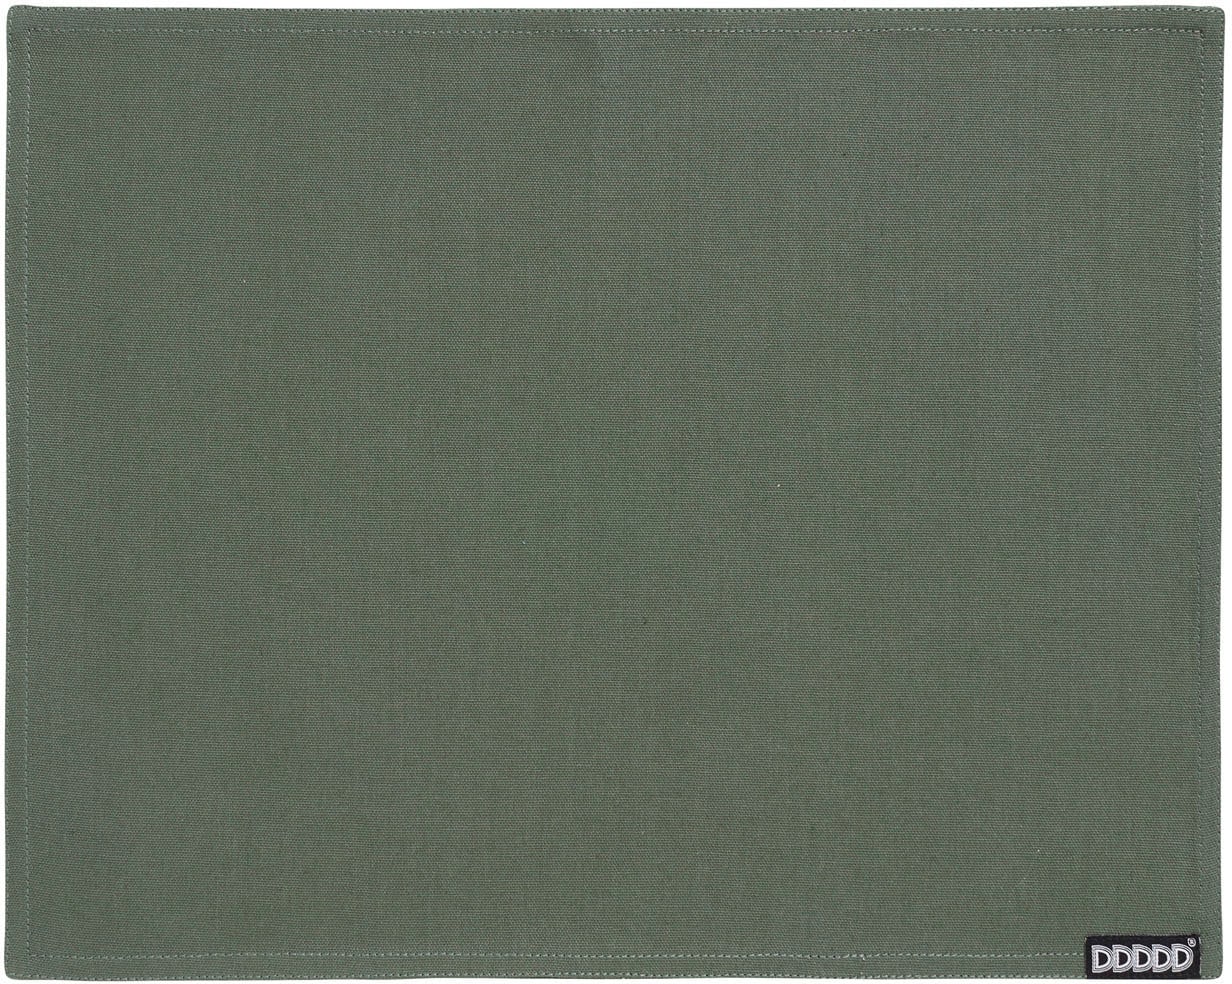 online Baumwolle bestellen 35x45 cm, (Set, St.), Platzset Platzdecke, »Kit«, 2 DDDDD